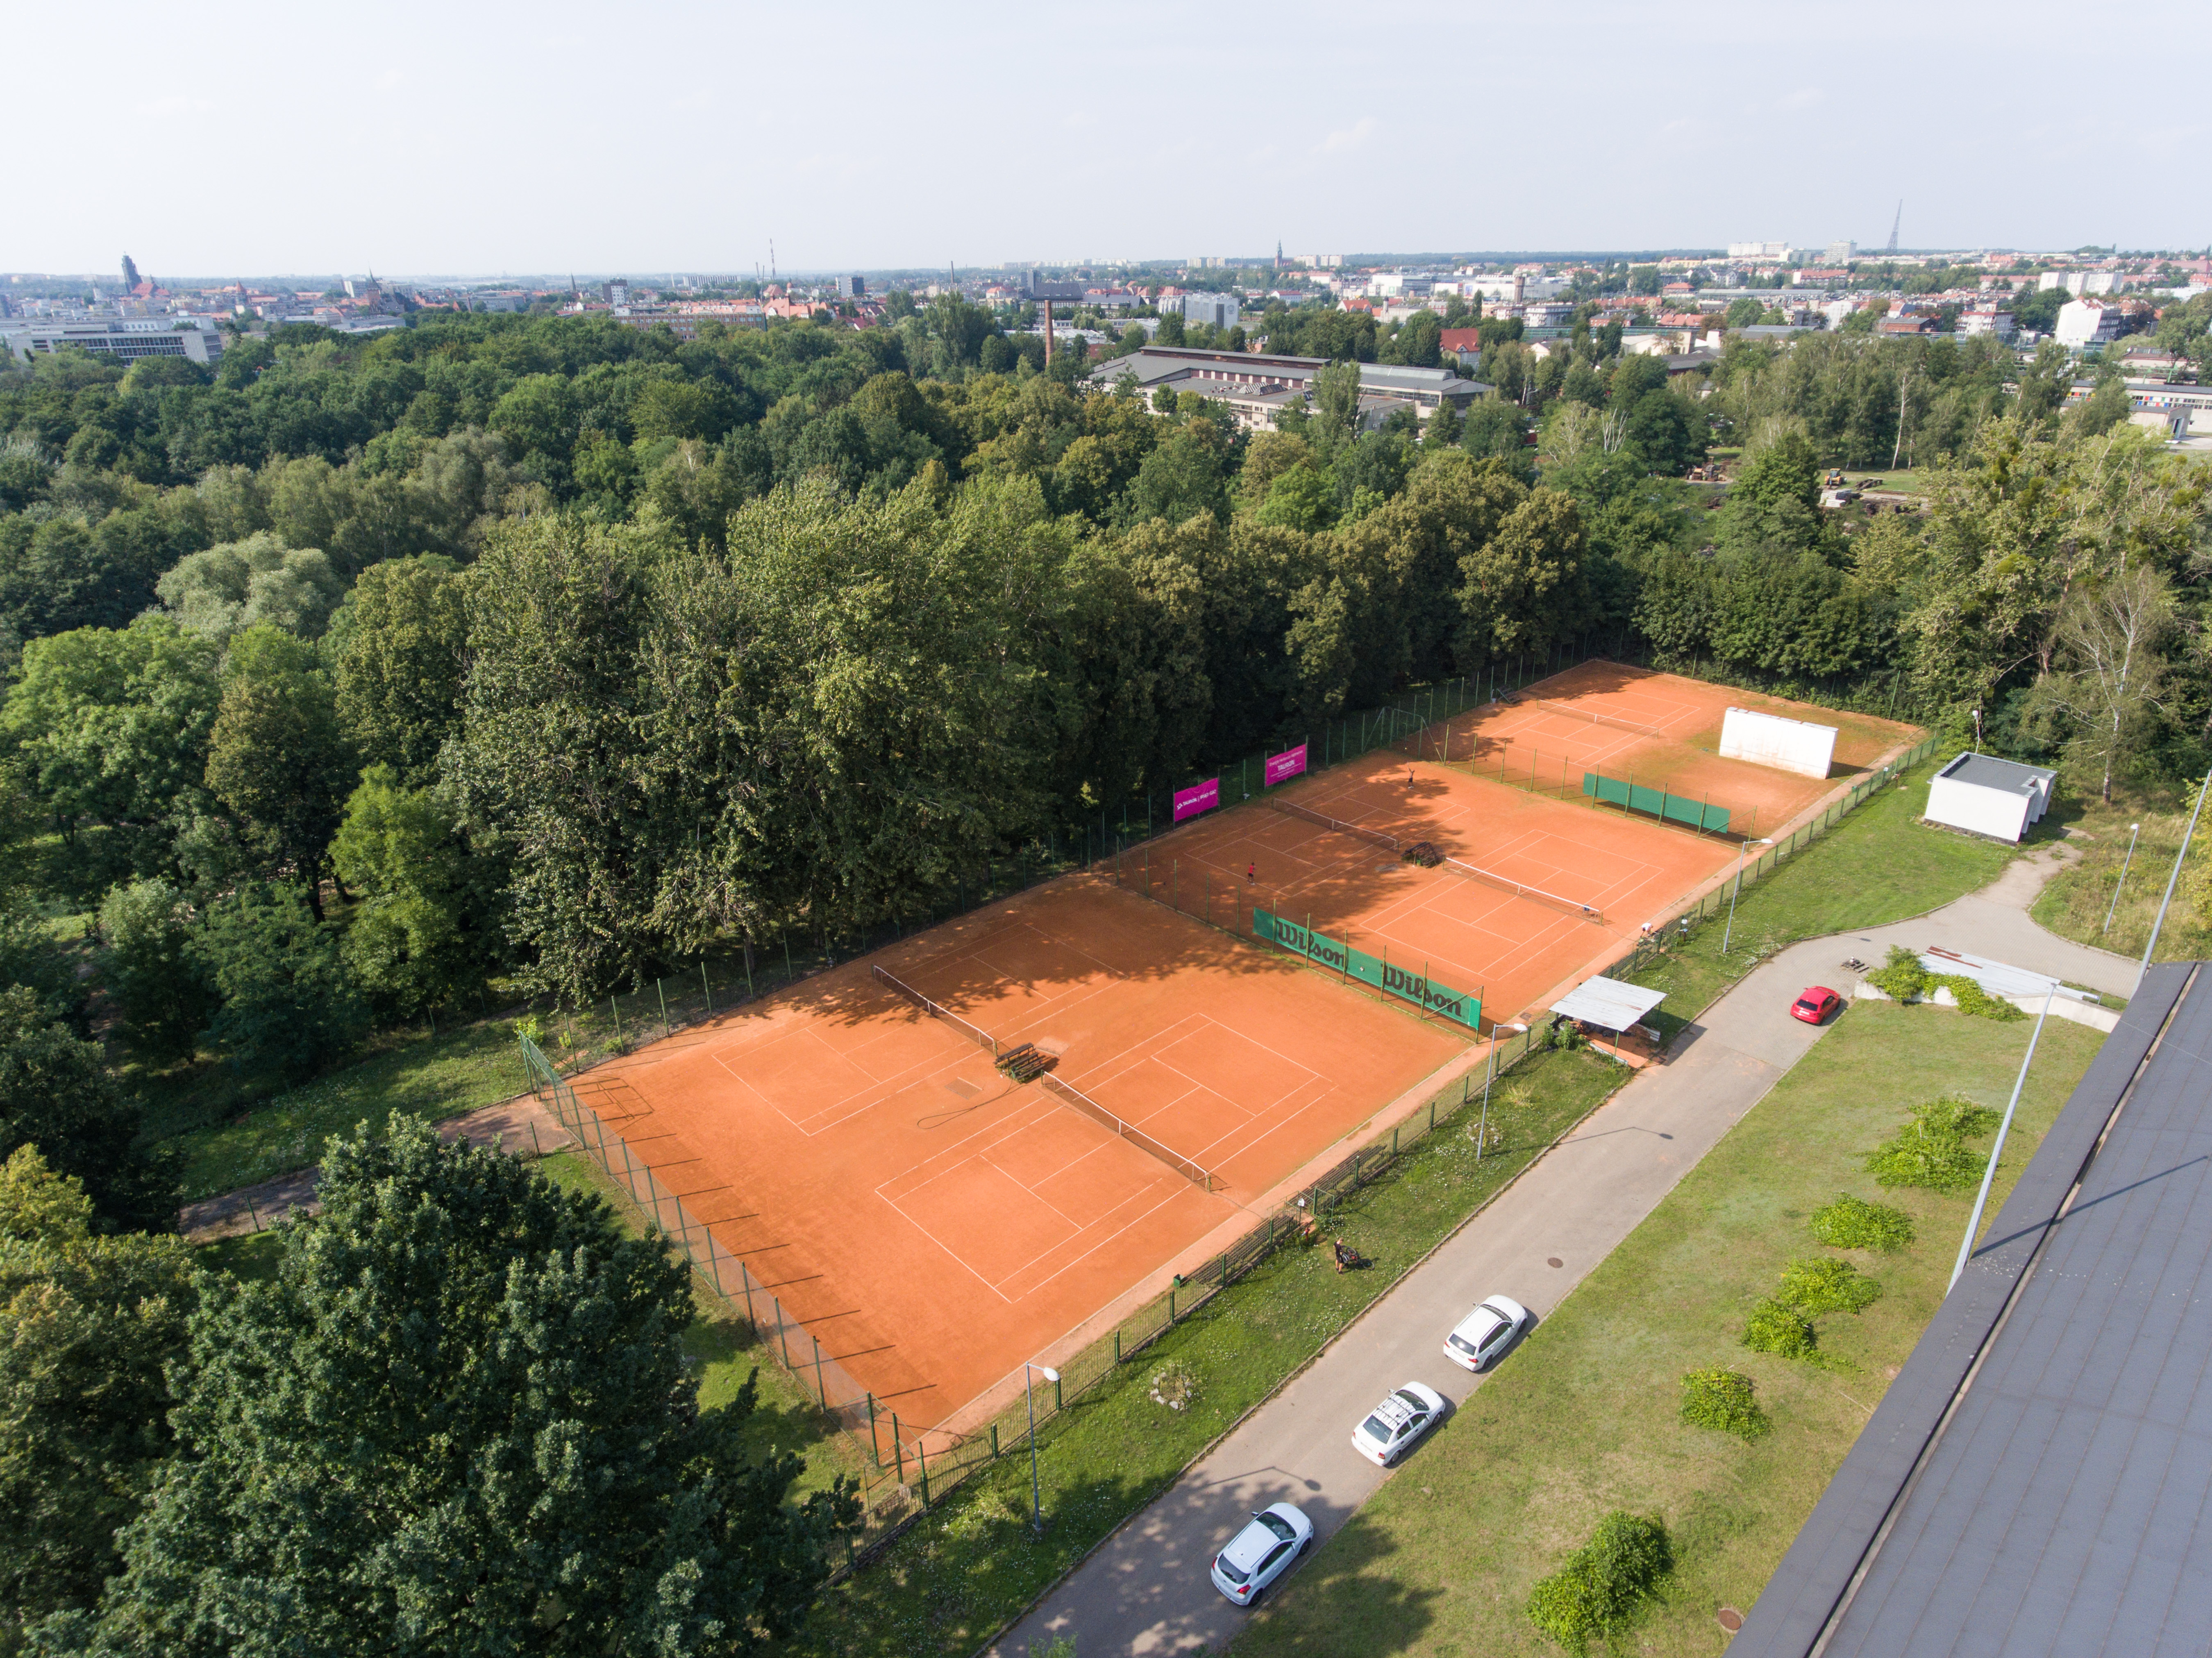 Tennisplätze der Technischen Hochschule Schlesien